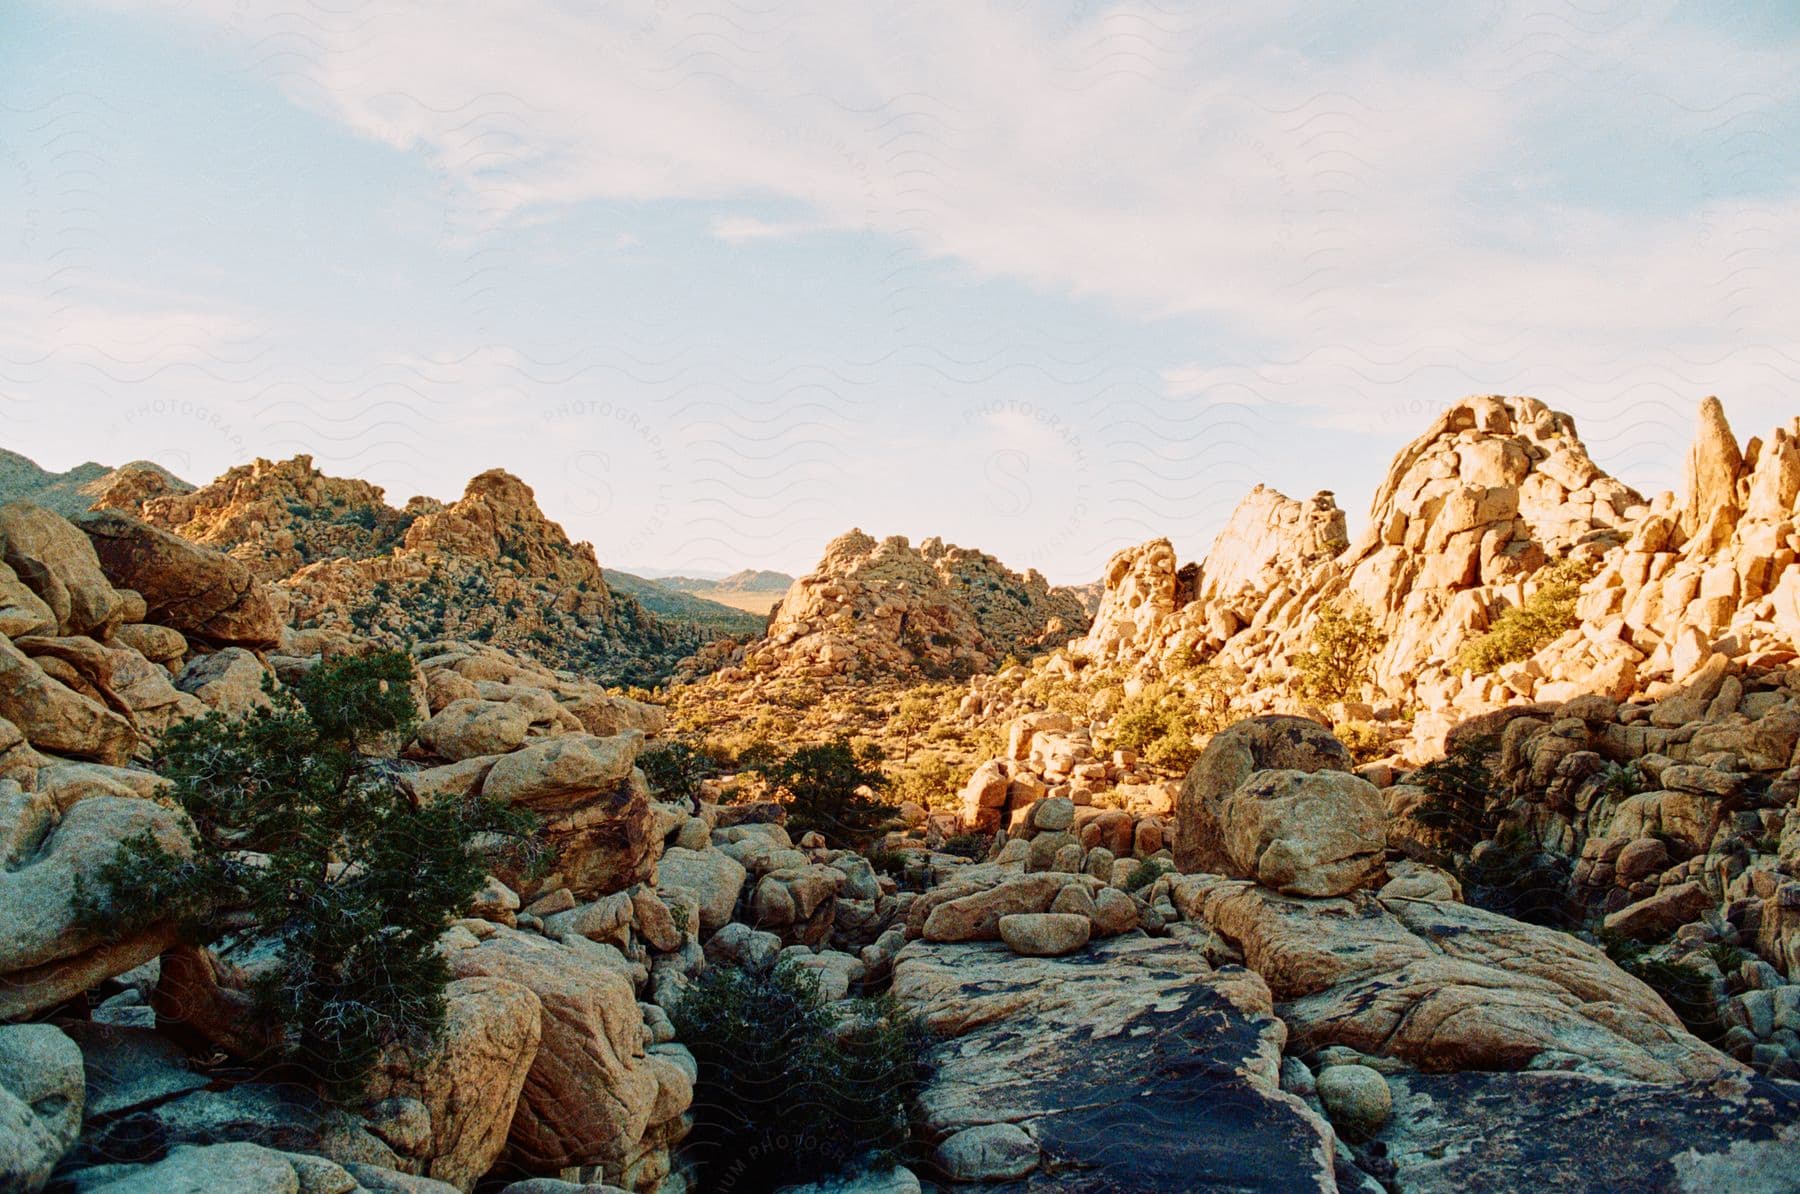 A rocky desert landscape under a clear sky